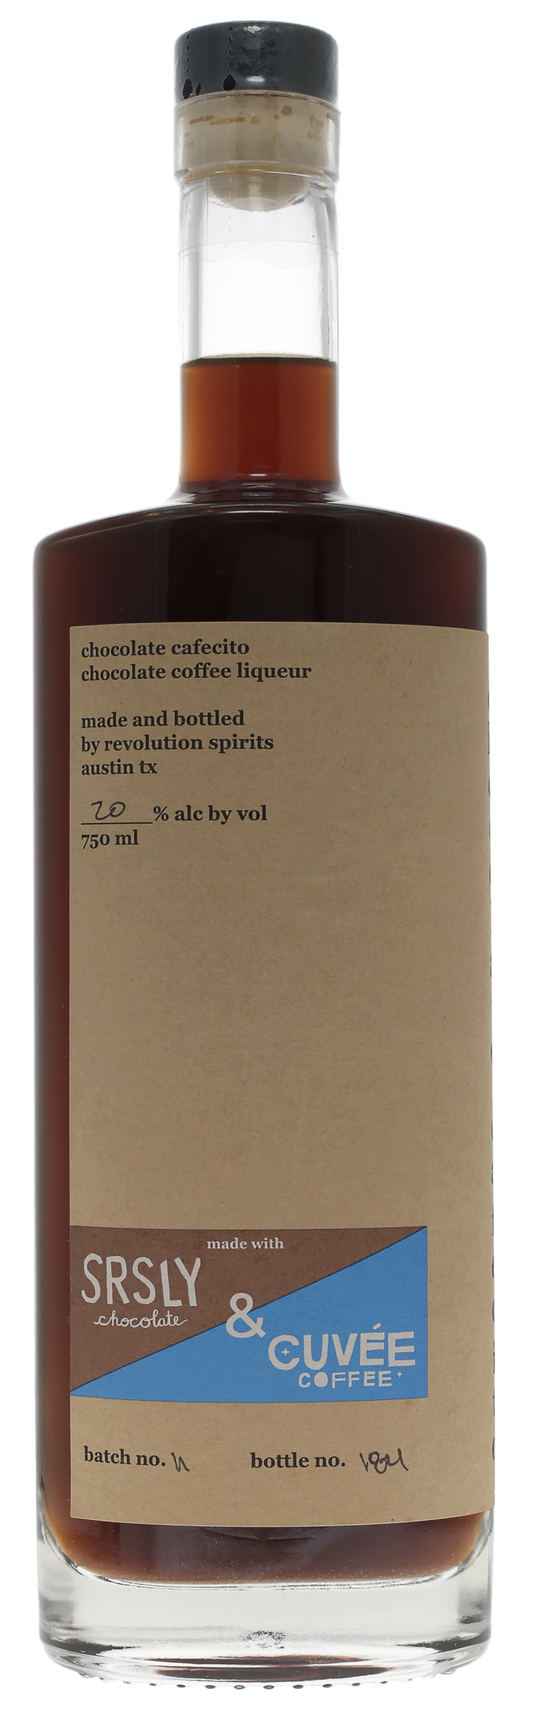 Chocolate Cafecito Coffee Liqueur